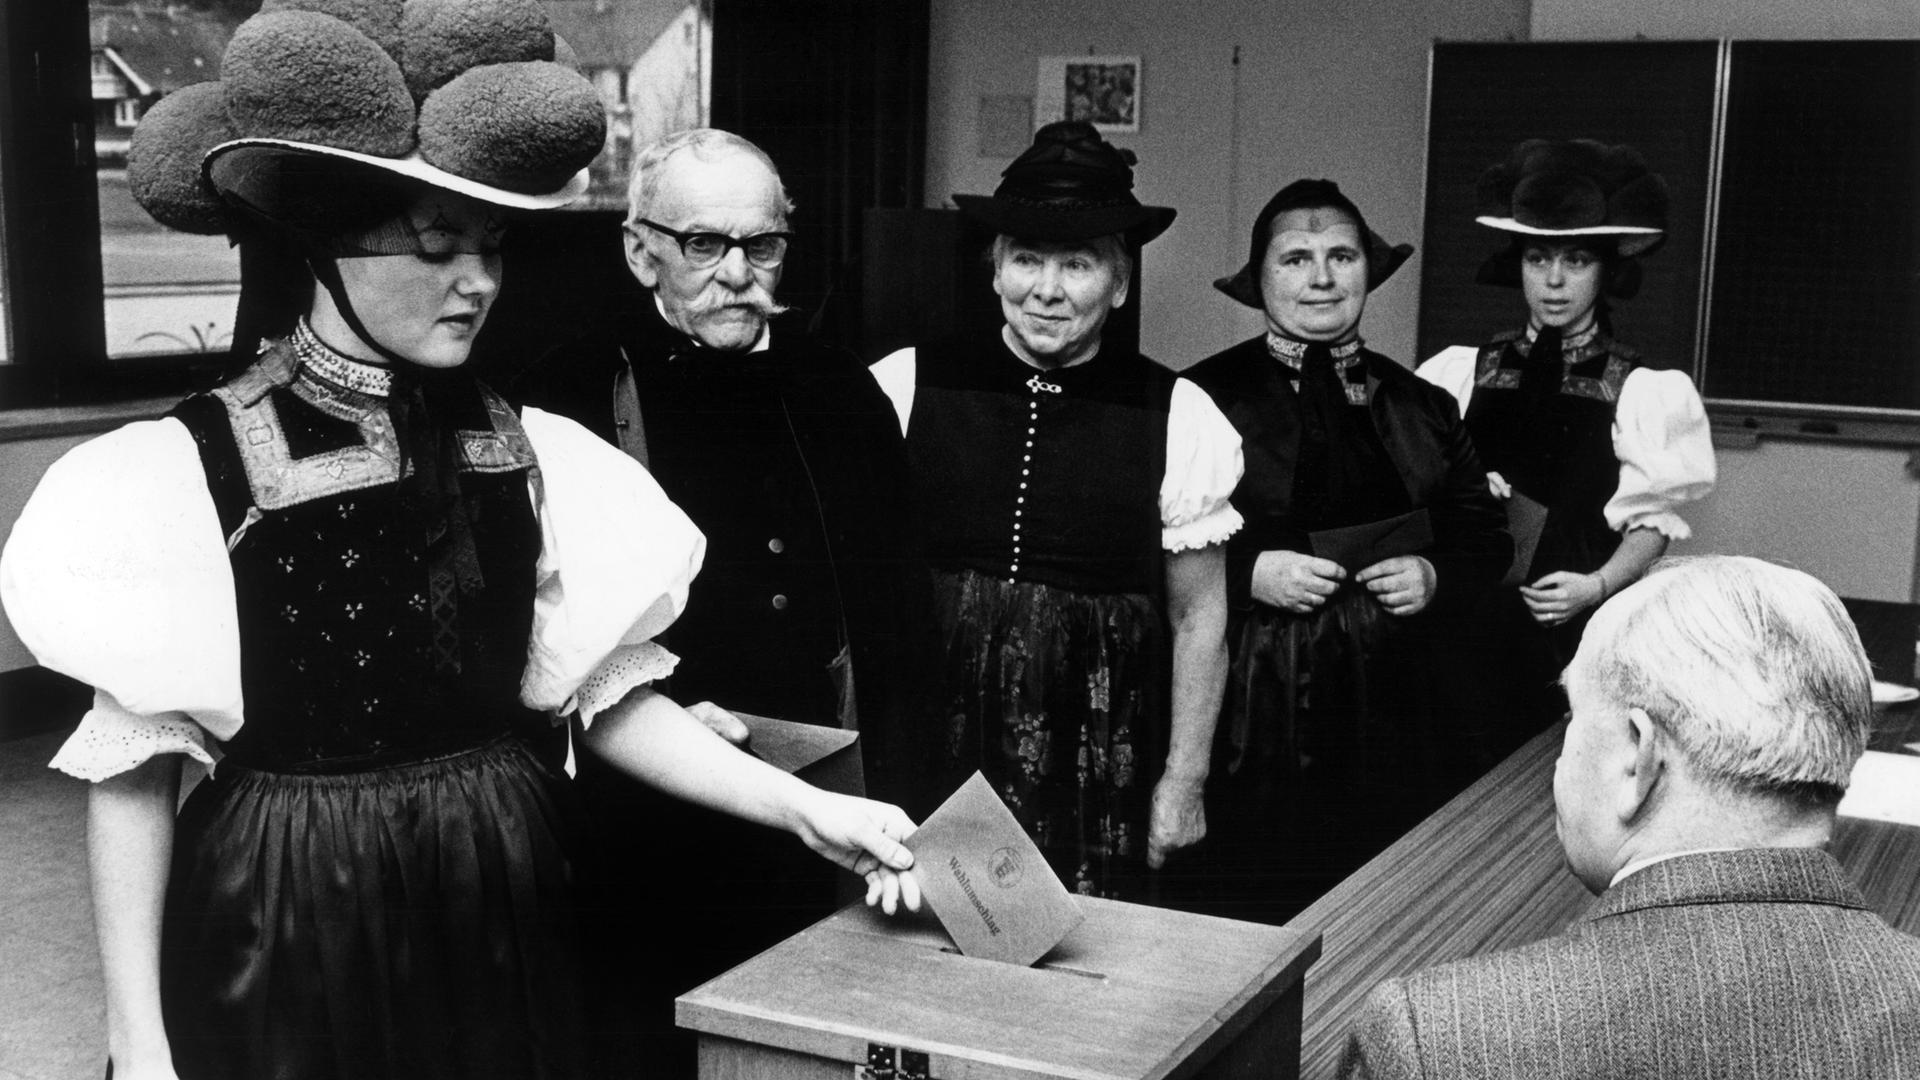 Wählerinnen und Wähler in traditionellen Trachten des Schwarzwaldes geben am 23.04.1972 bei der Landtagswahl 1972 in Baden-Württemberg in einem Wahllokal ihre Stimme ab. 